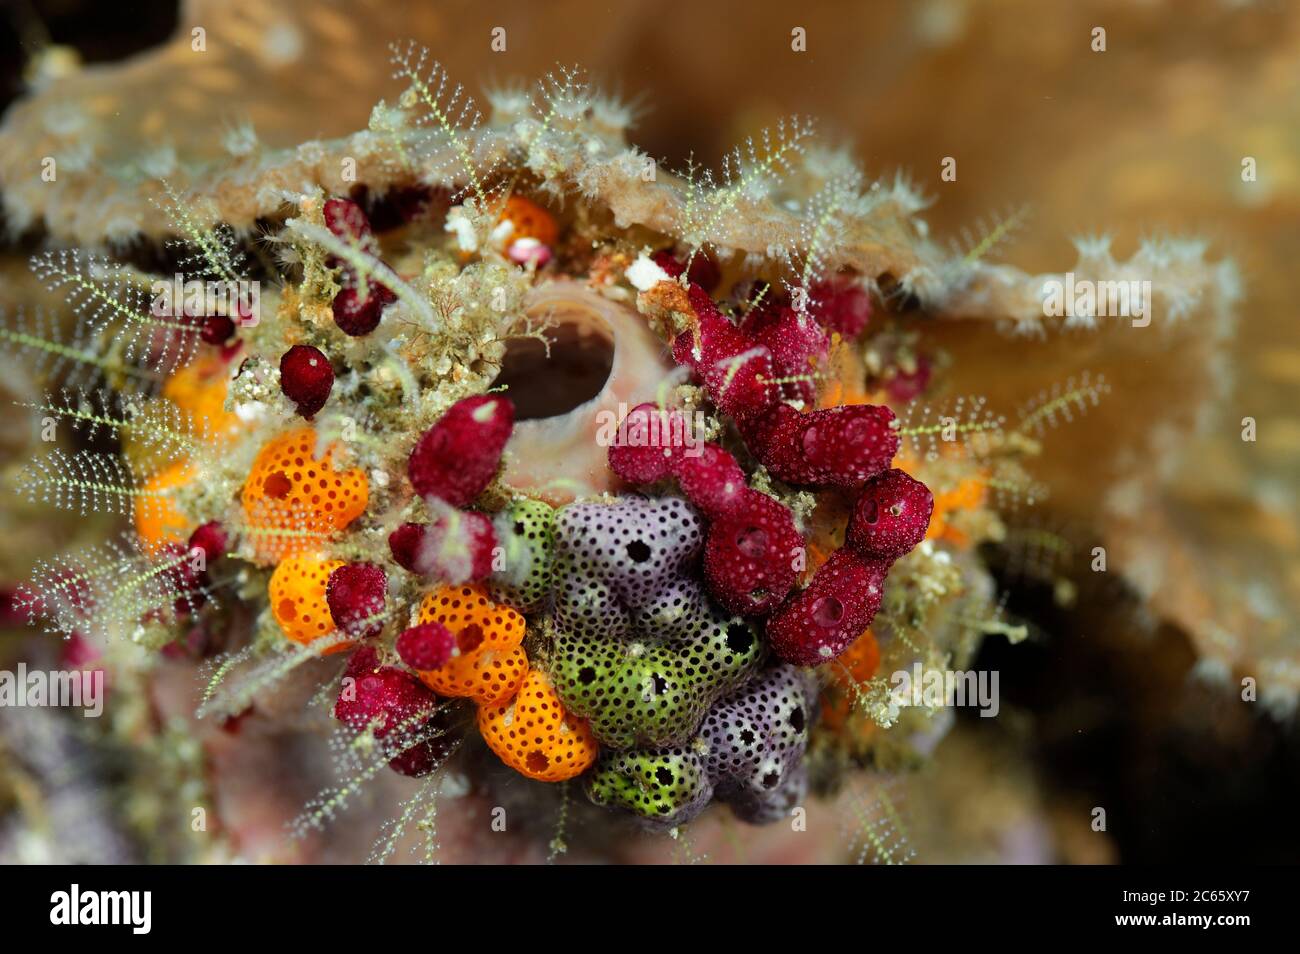 Cluster von bunten Meer-Tunikaten. Erdbeertunikate (Didemnid sp.) Raja Ampat, West Papua, Indonesien, Pazifischer Ozean [Größe eines einzelnen Organismus: 3 cm] Stockfoto